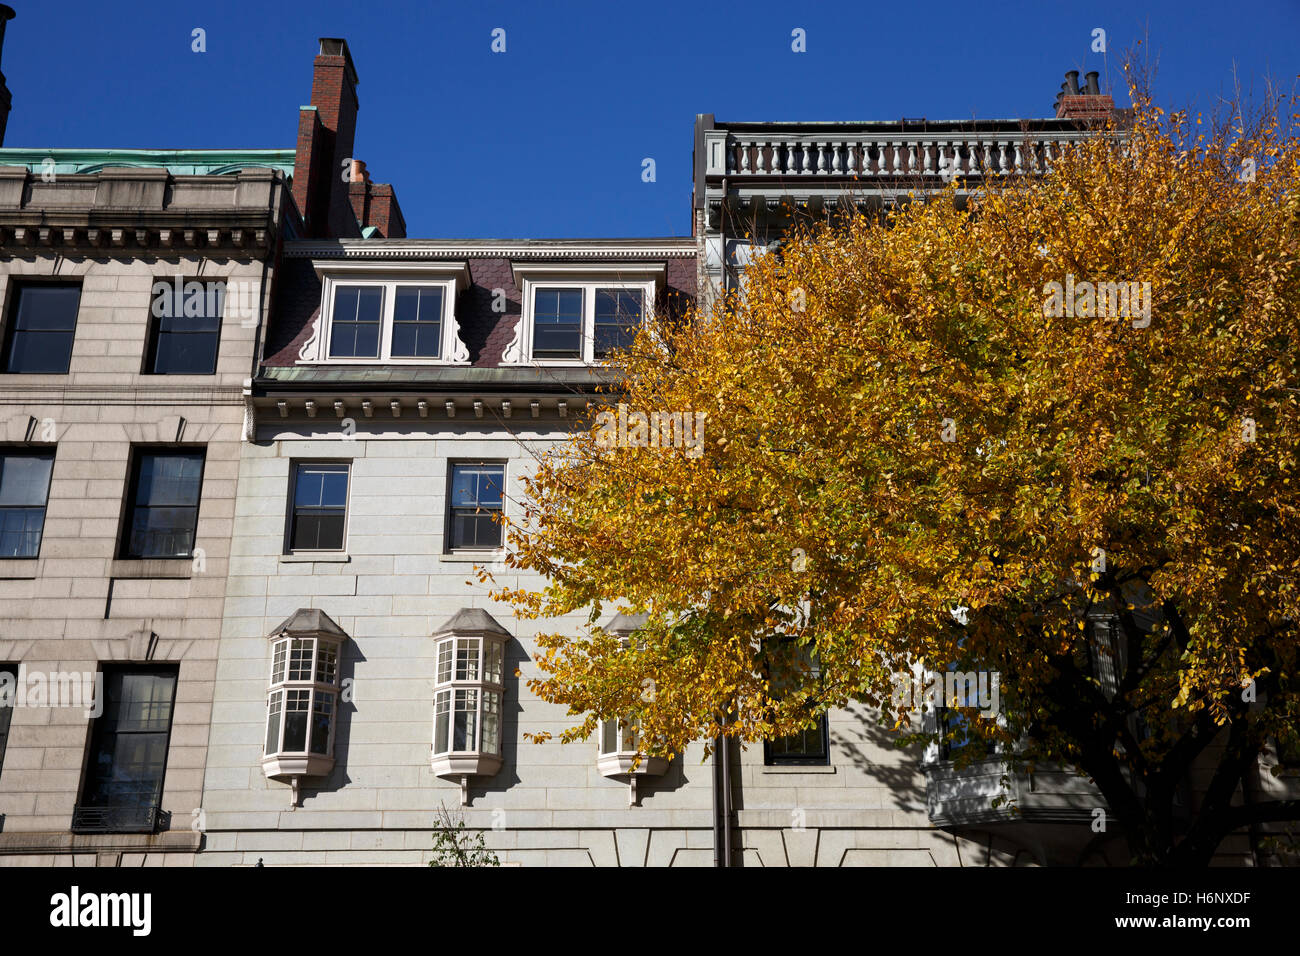 Feuillage d'automne sur Beacon Street, Boston, Massachusetts Banque D'Images